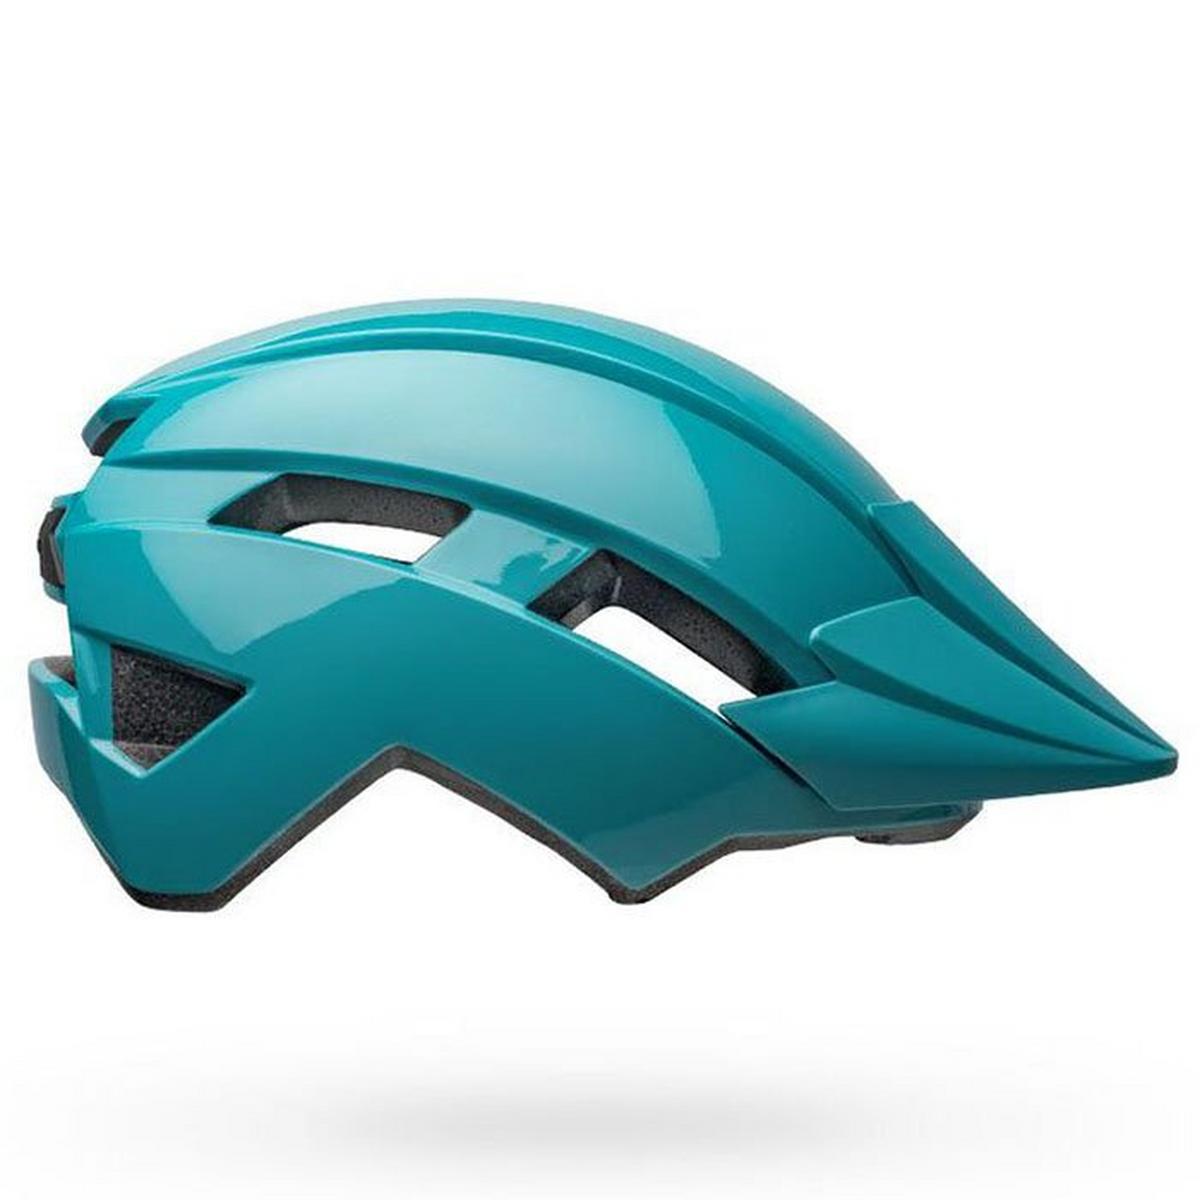 Juniors' Sidetrack II Helmet (UY)